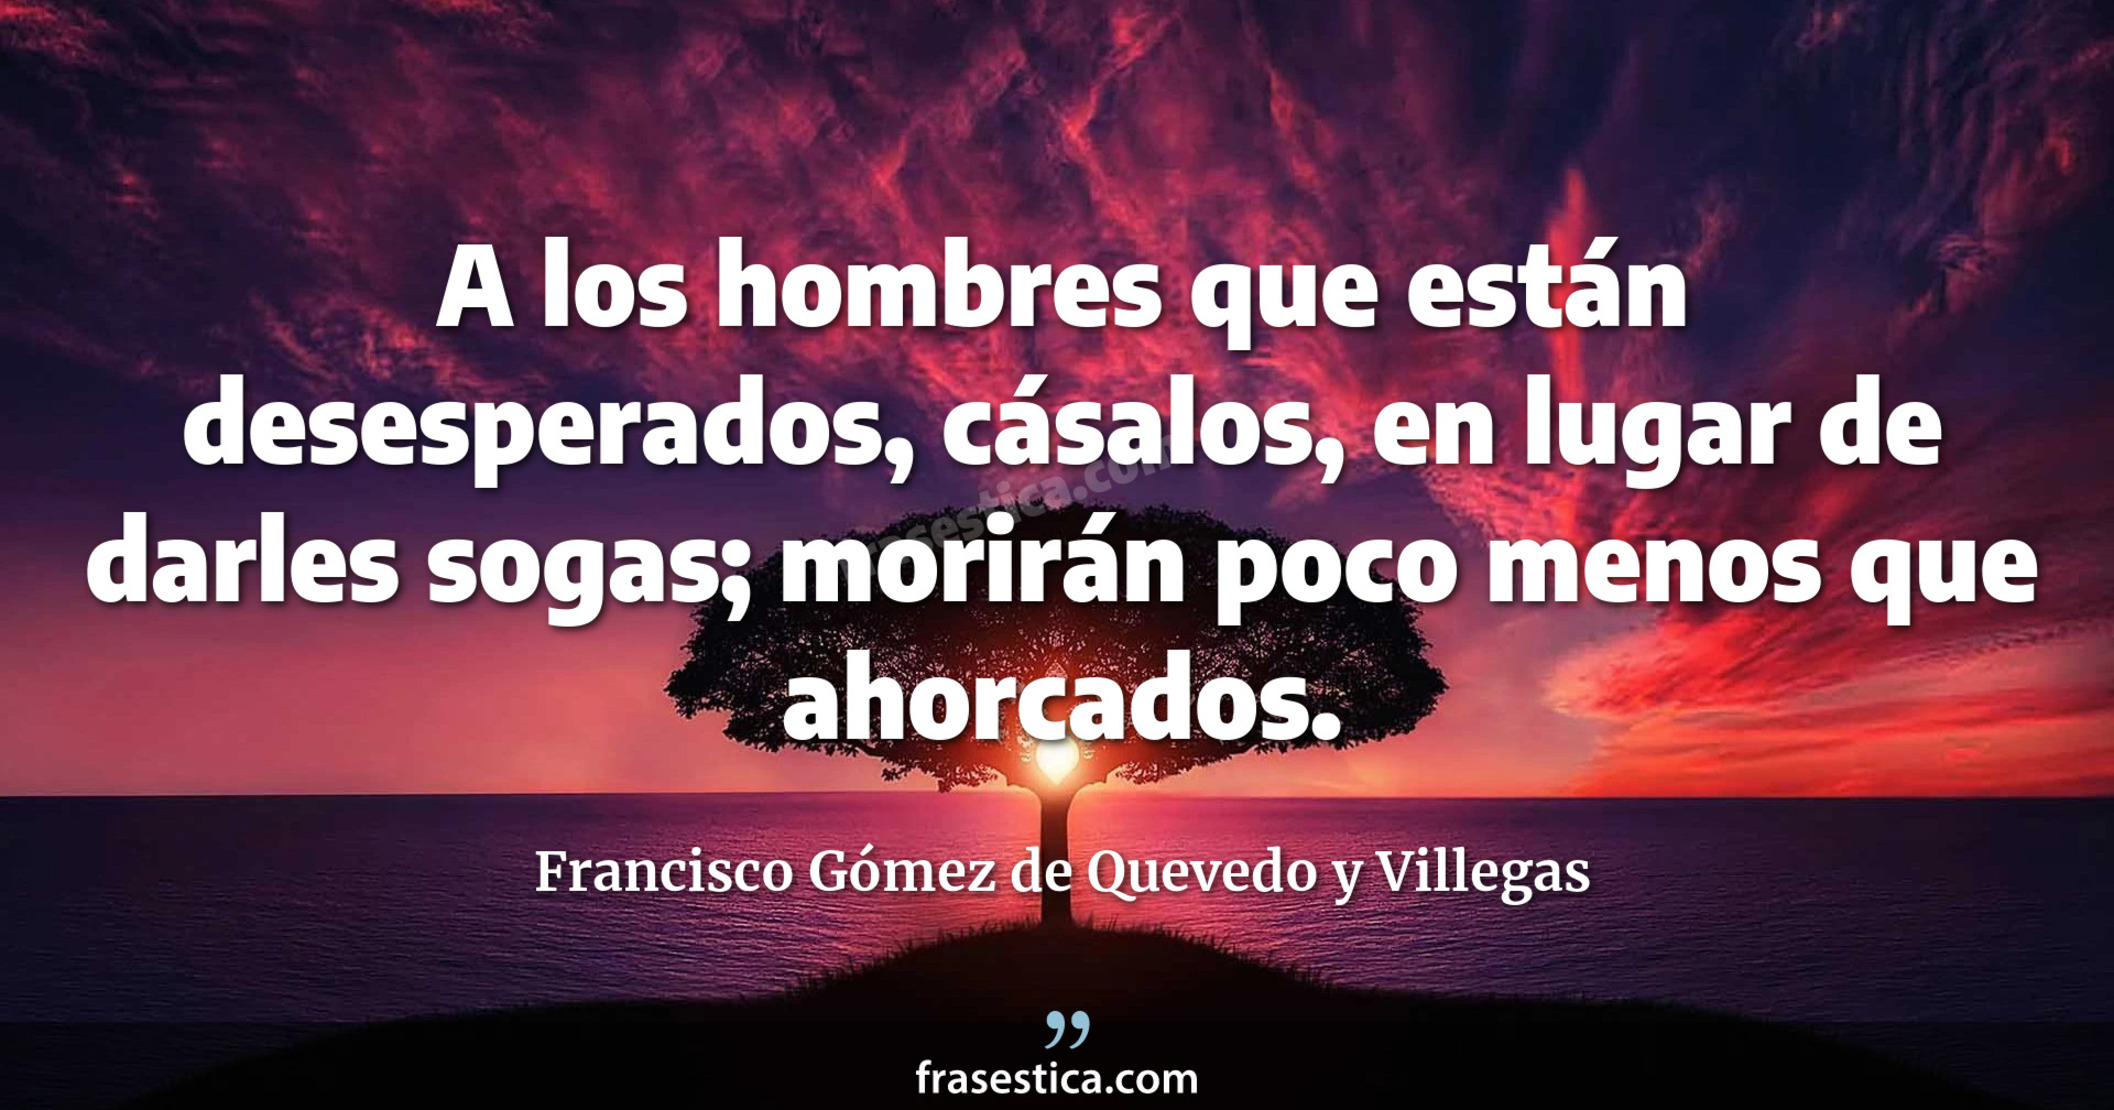 A los hombres que están desesperados, cásalos, en lugar de darles sogas; morirán poco menos que ahorcados.  - Francisco Gómez de Quevedo y Villegas